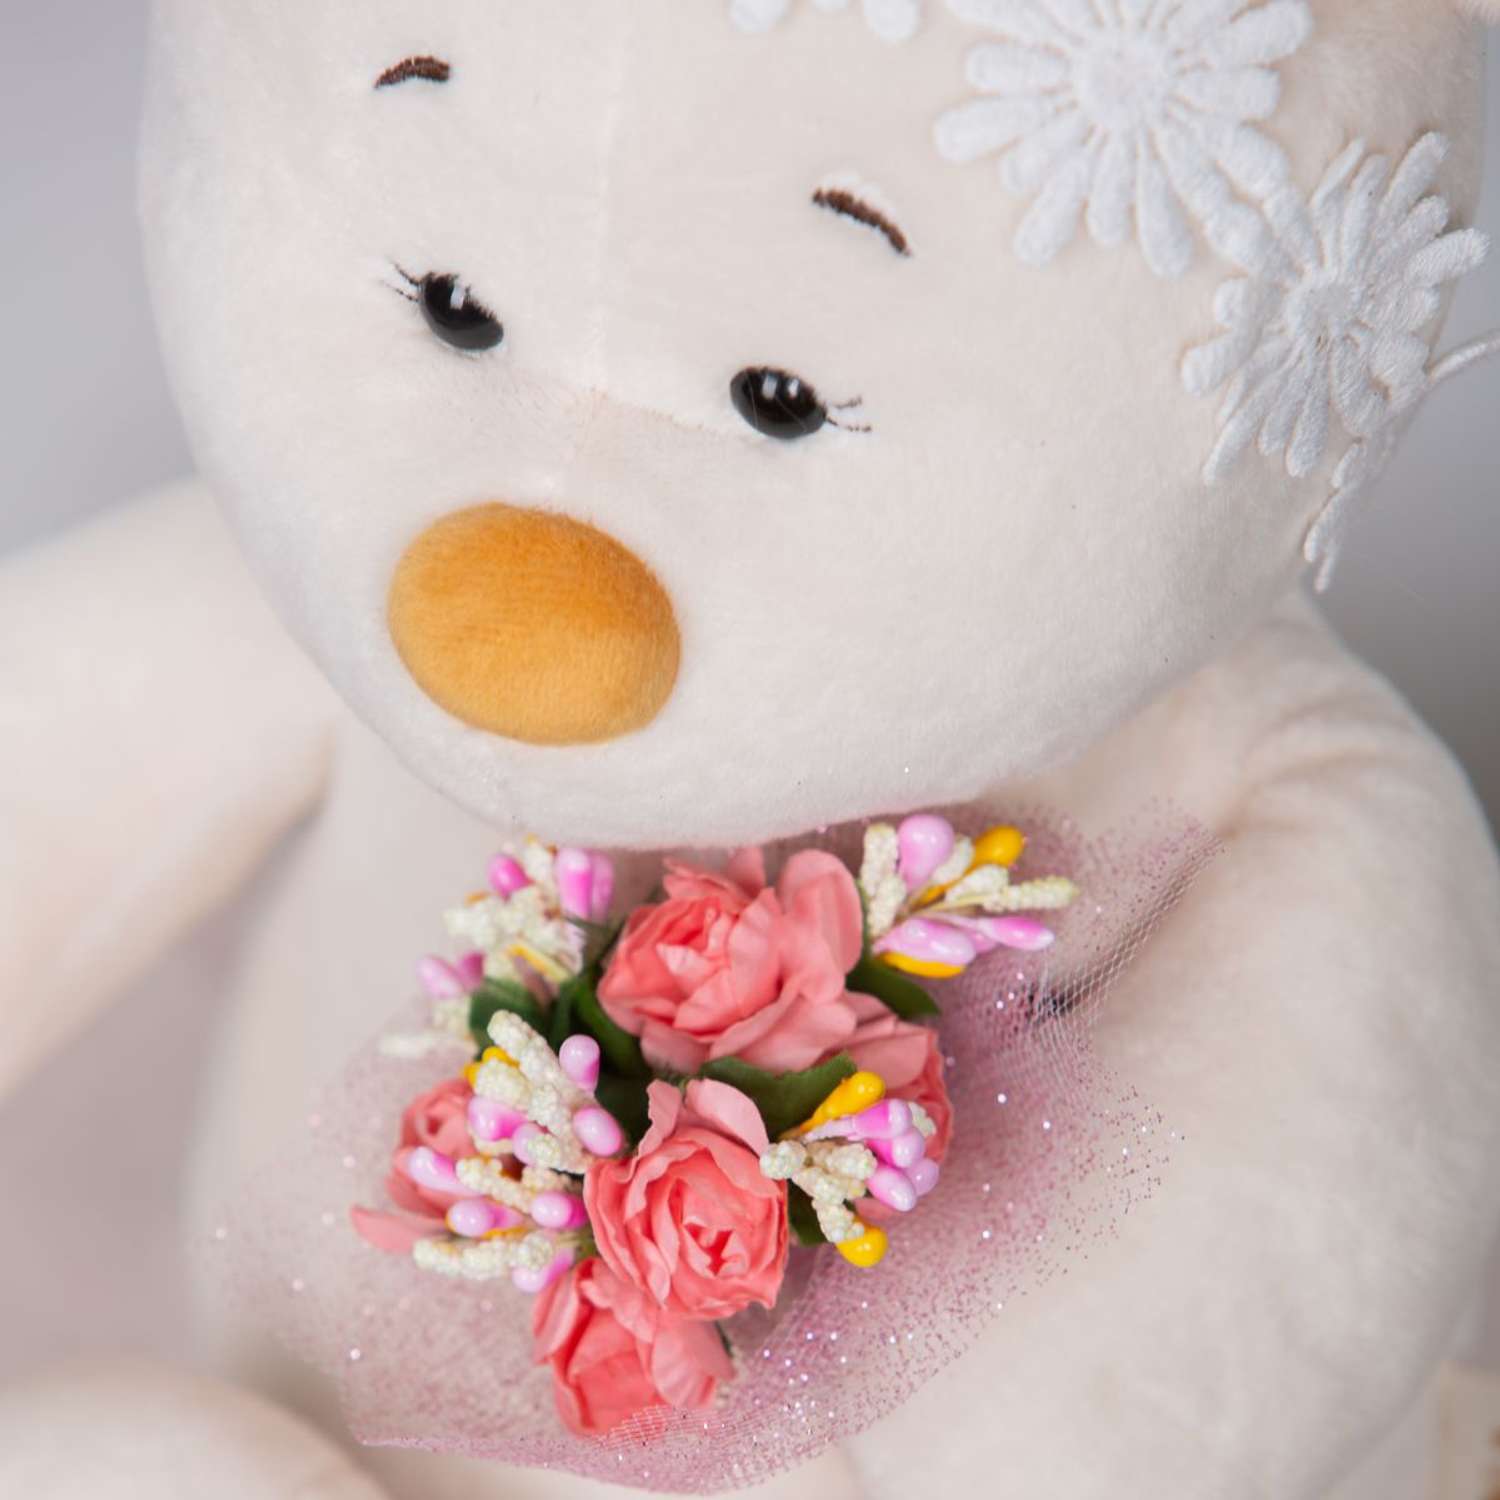 Мягкая игрушка KULT of toys плюшевый медведь в подарочной коробки для девочки masha с цветами 30 см - фото 3